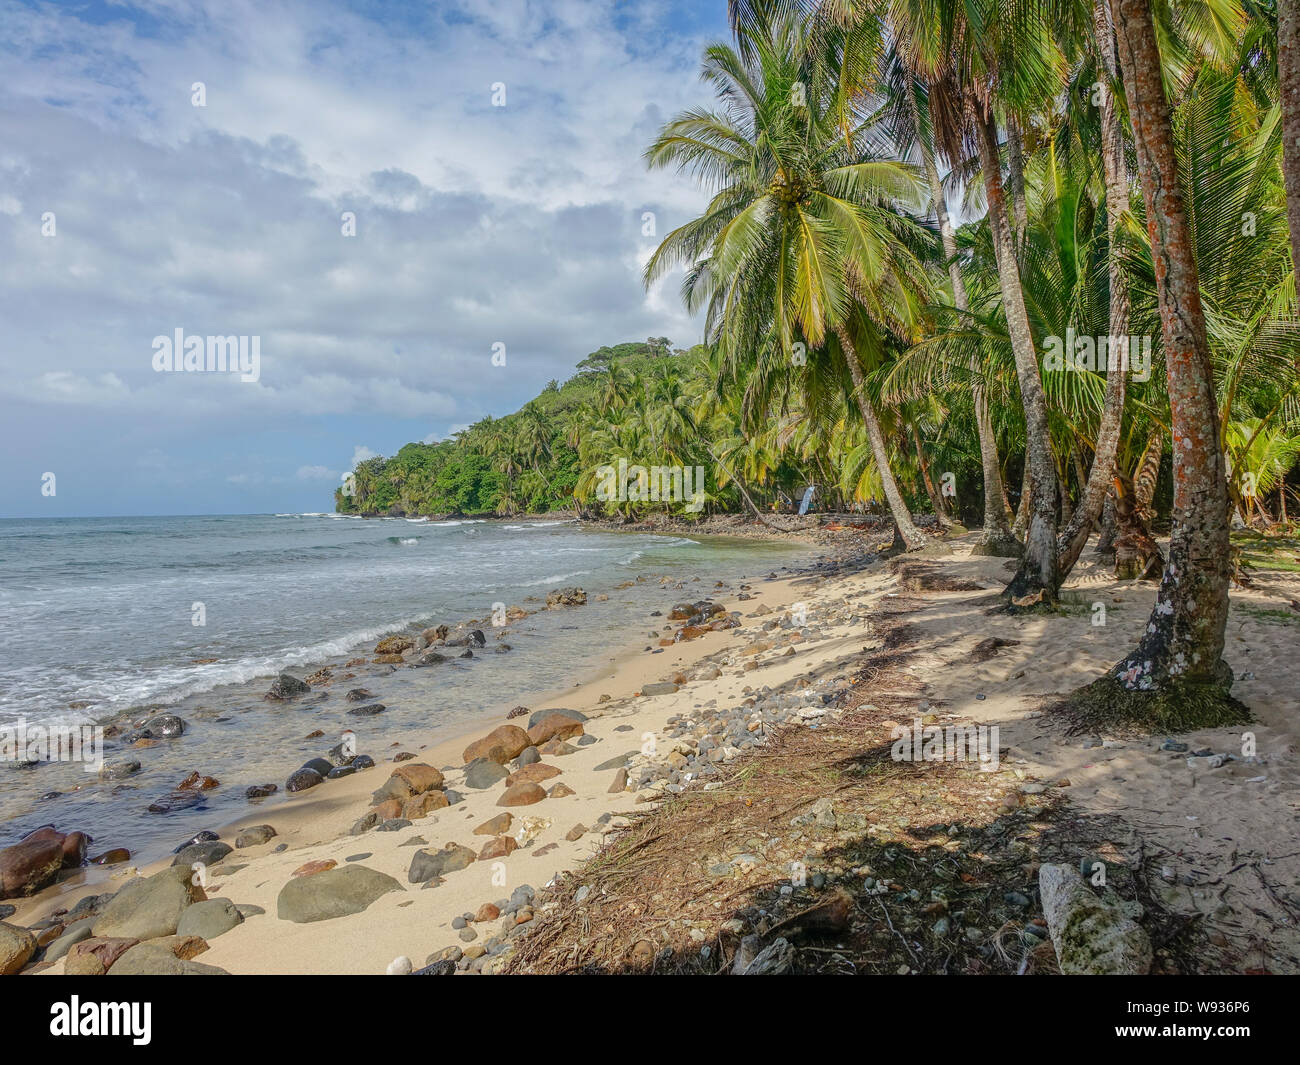 Insel Bastimentos, Bocas del Toro, Panama - 18. März 2017: einsamer Strand mit Felsen am Ufer und Palmen unter einem bewölkten Himmel Stockfoto